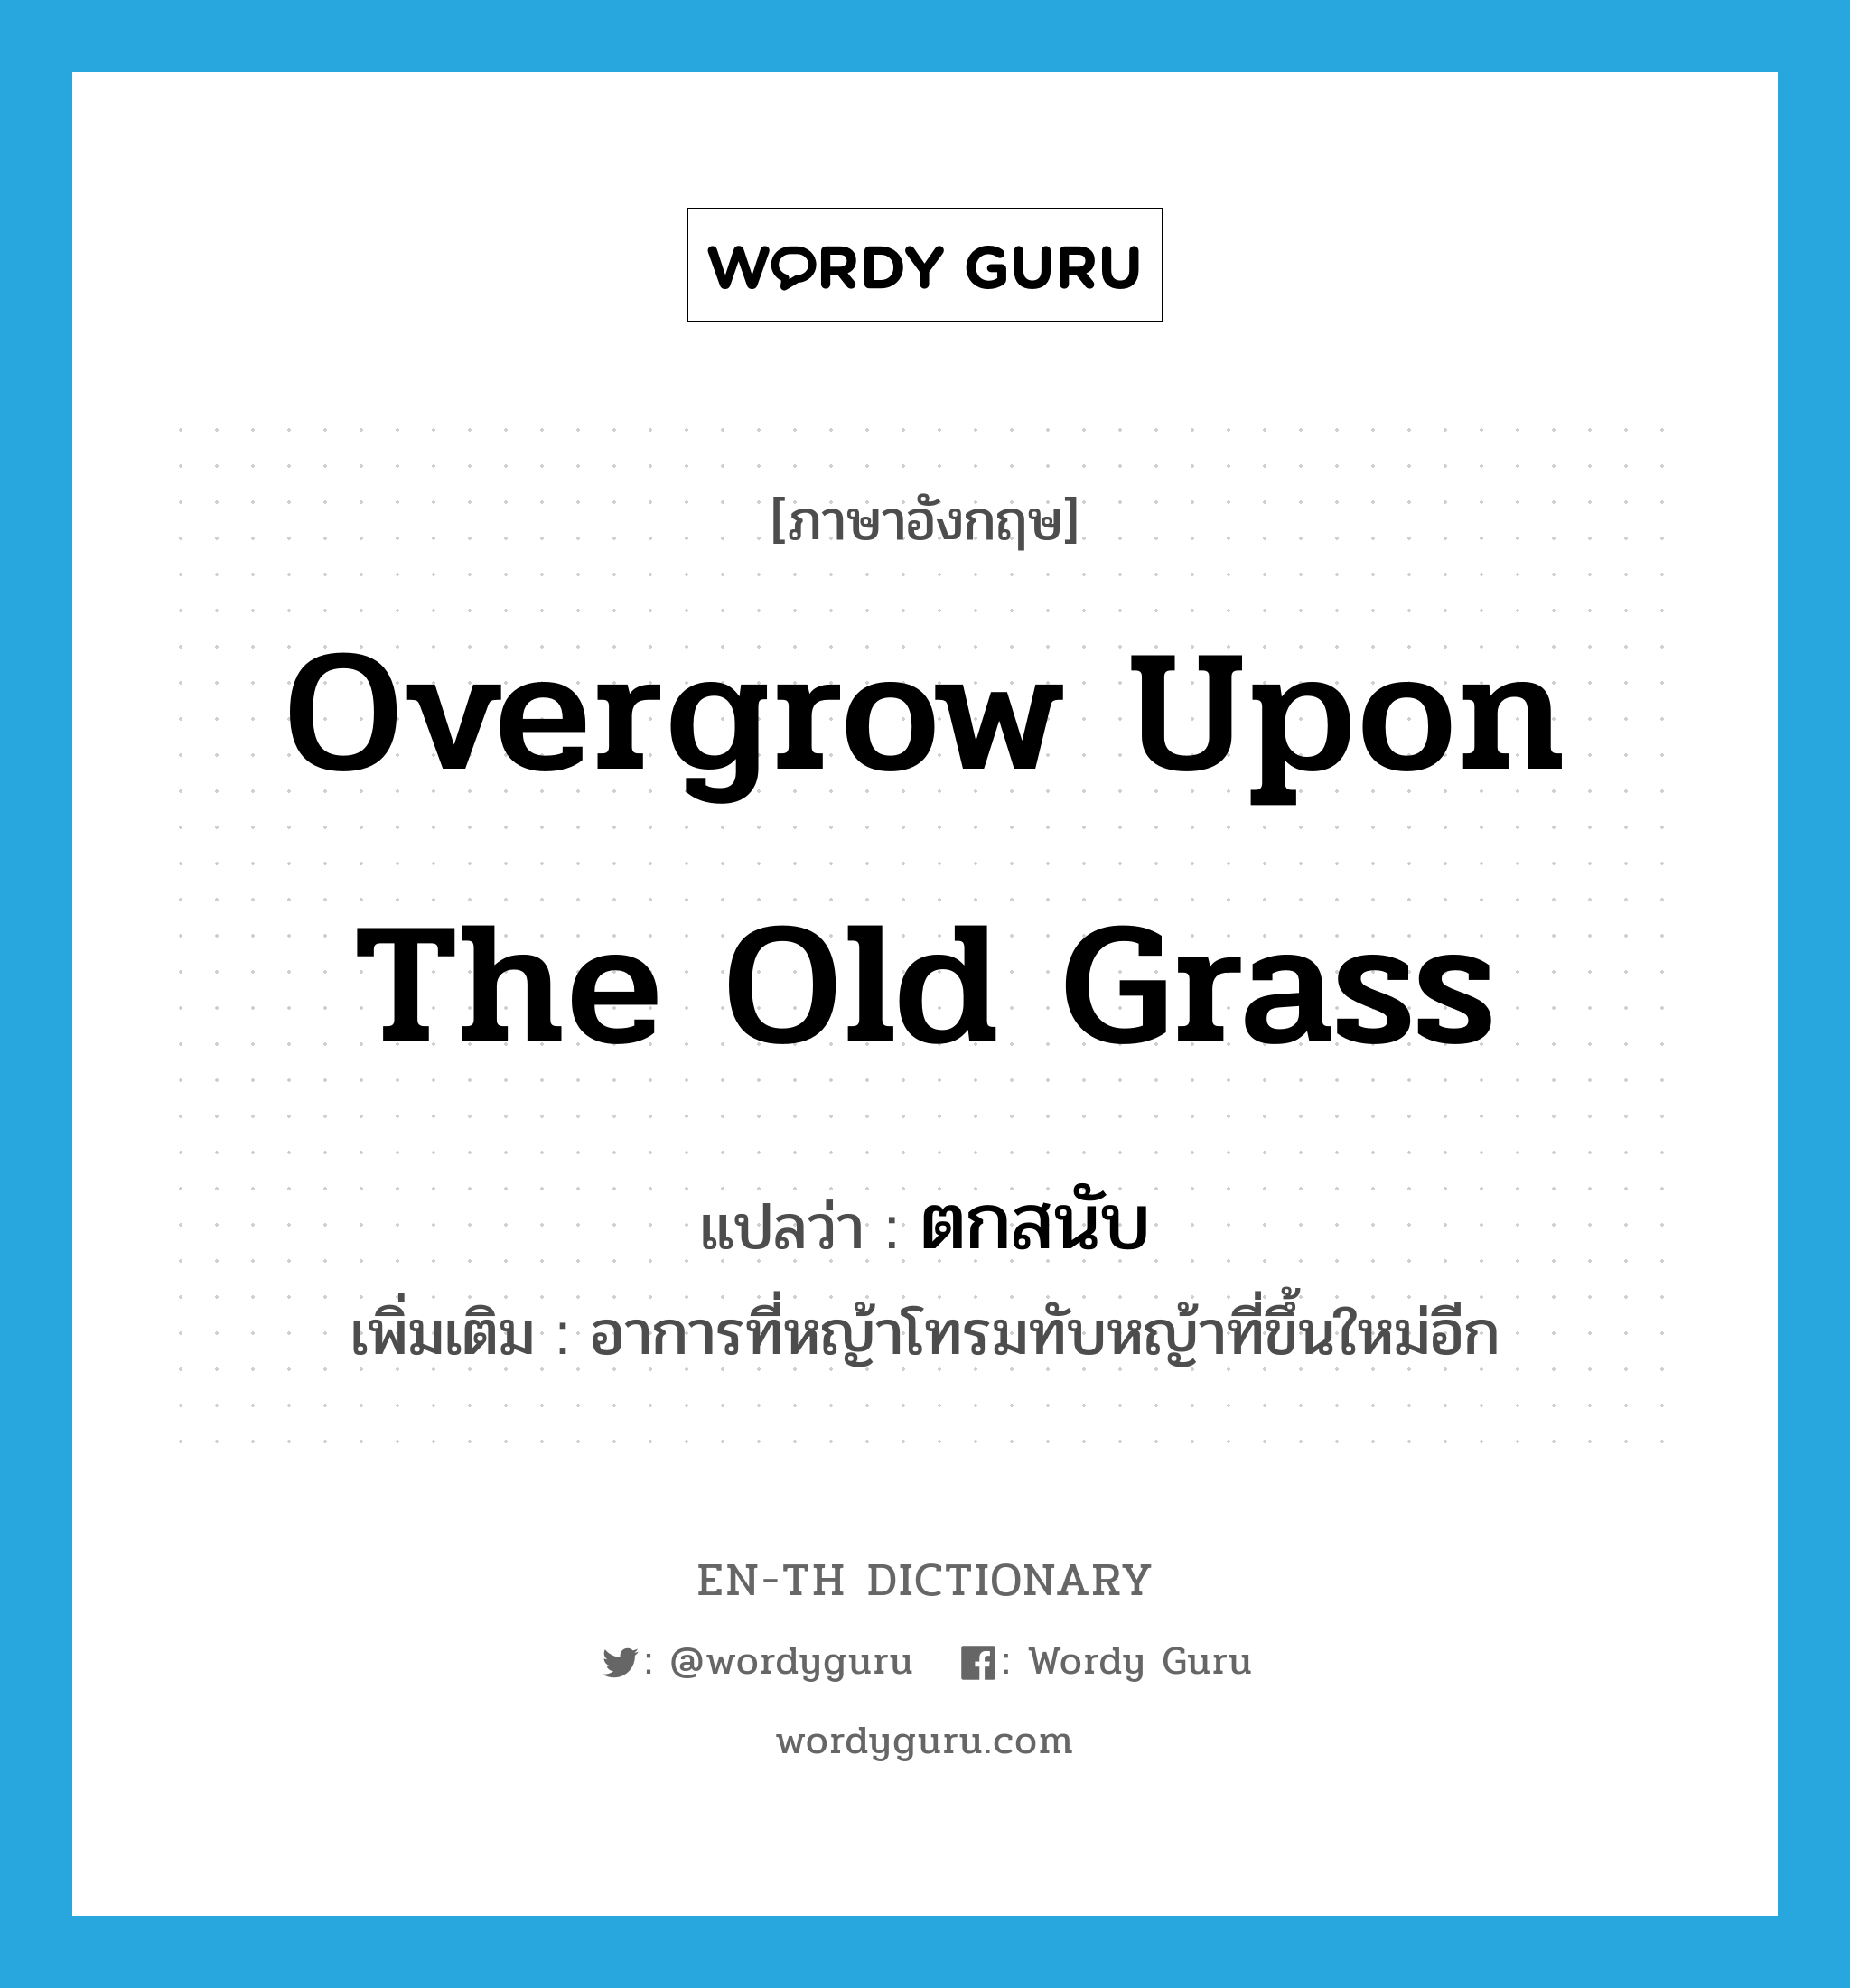 ตกสนับ ภาษาอังกฤษ?, คำศัพท์ภาษาอังกฤษ ตกสนับ แปลว่า overgrow upon the old grass ประเภท V เพิ่มเติม อาการที่หญ้าโทรมทับหญ้าที่ขึ้นใหม่อีก หมวด V